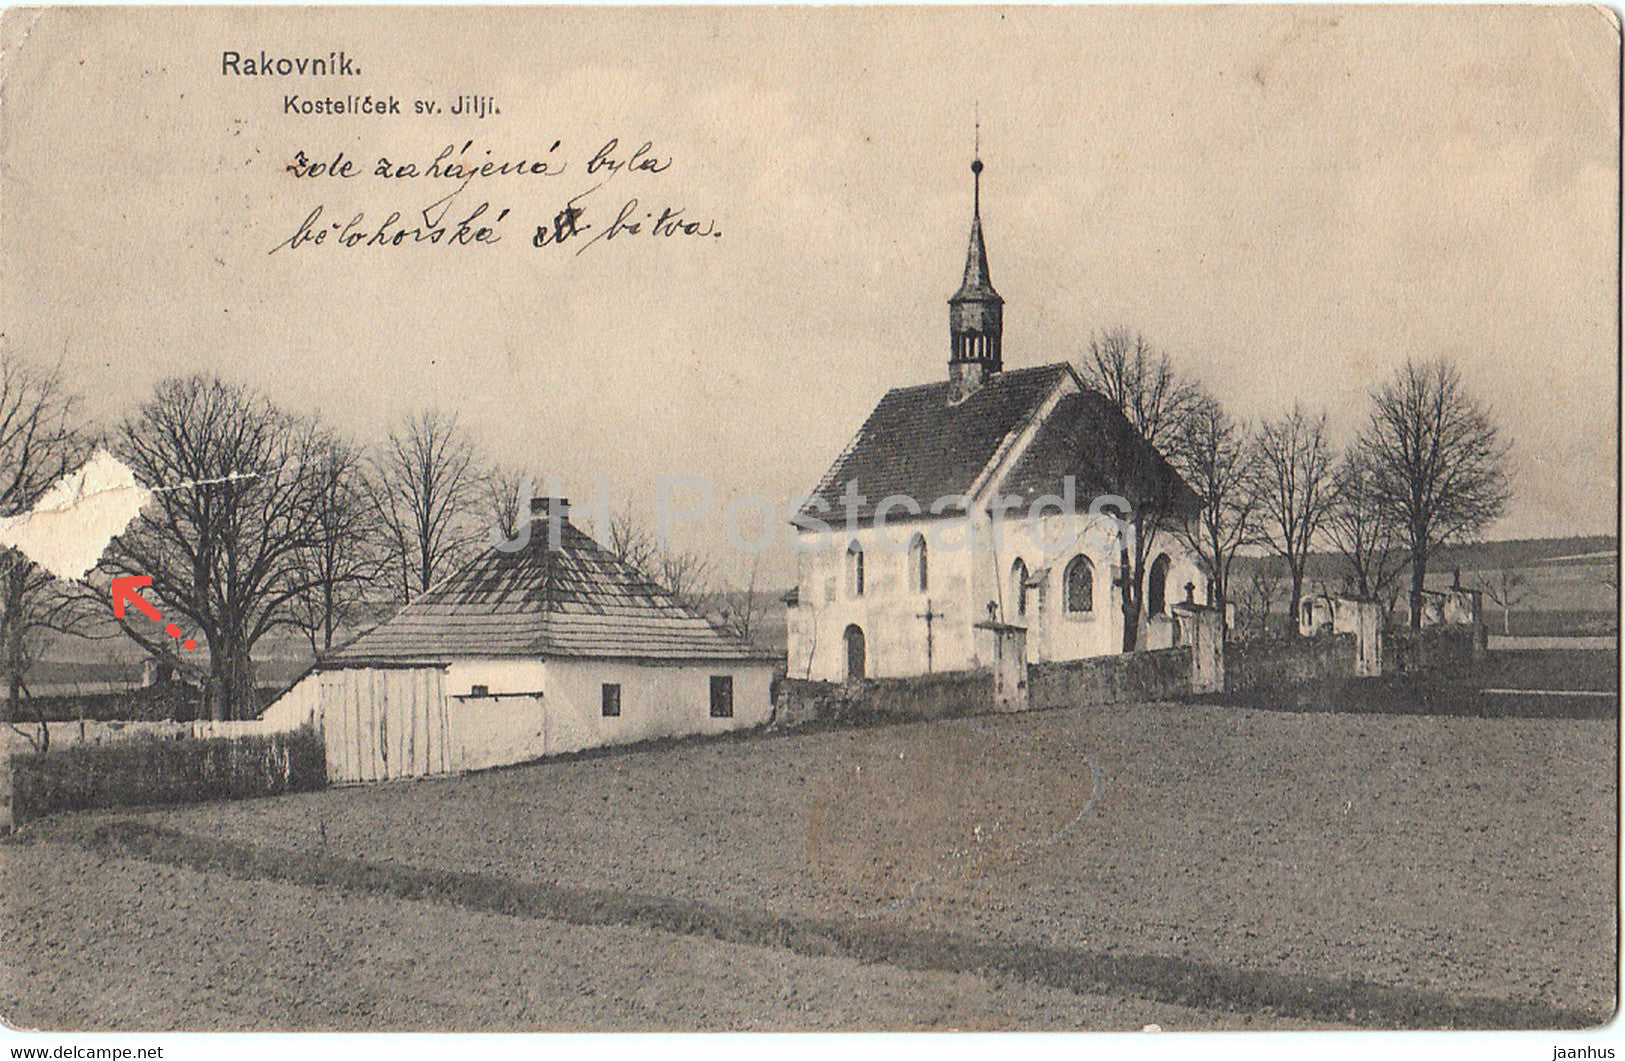 Rakovnik - Kostelicek sv Jilji - church - old postcard - 1921 - Czech Republic - Czechoslovakia - used - JH Postcards